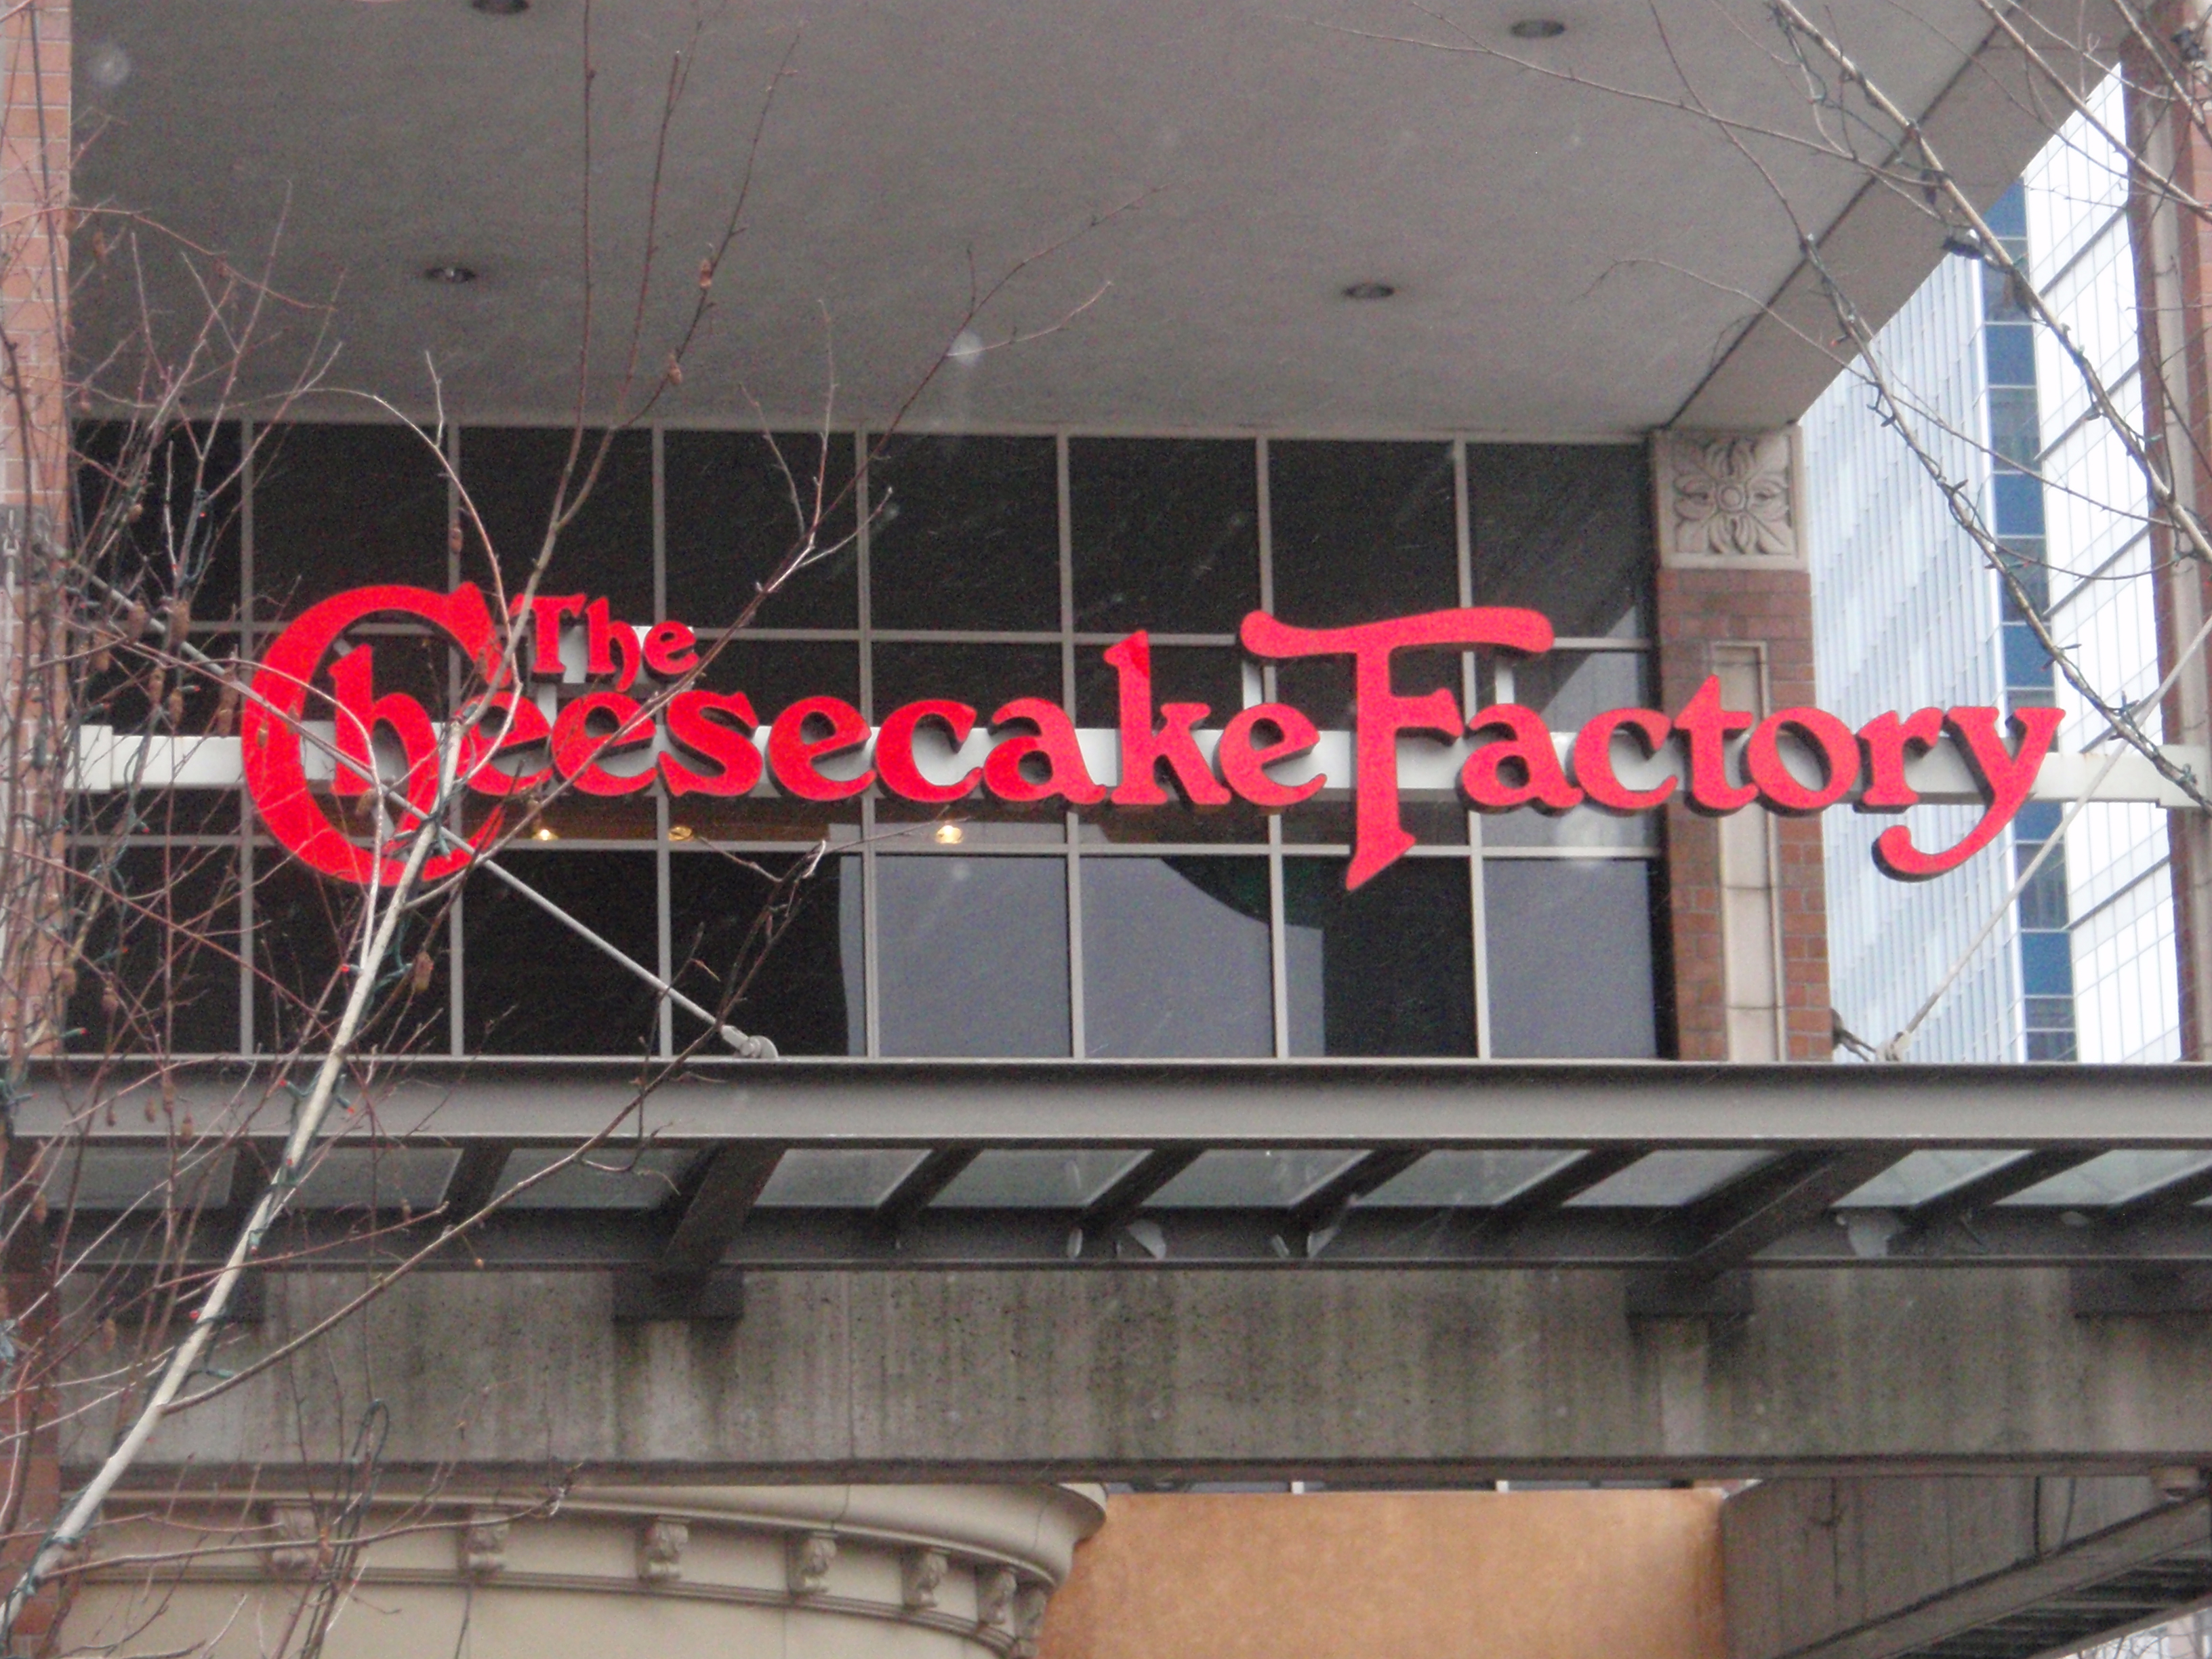 تُظهر صورة لافتة تشيزكيك فاكتوري كبيرة معلقة فوق مدخل المبنى.